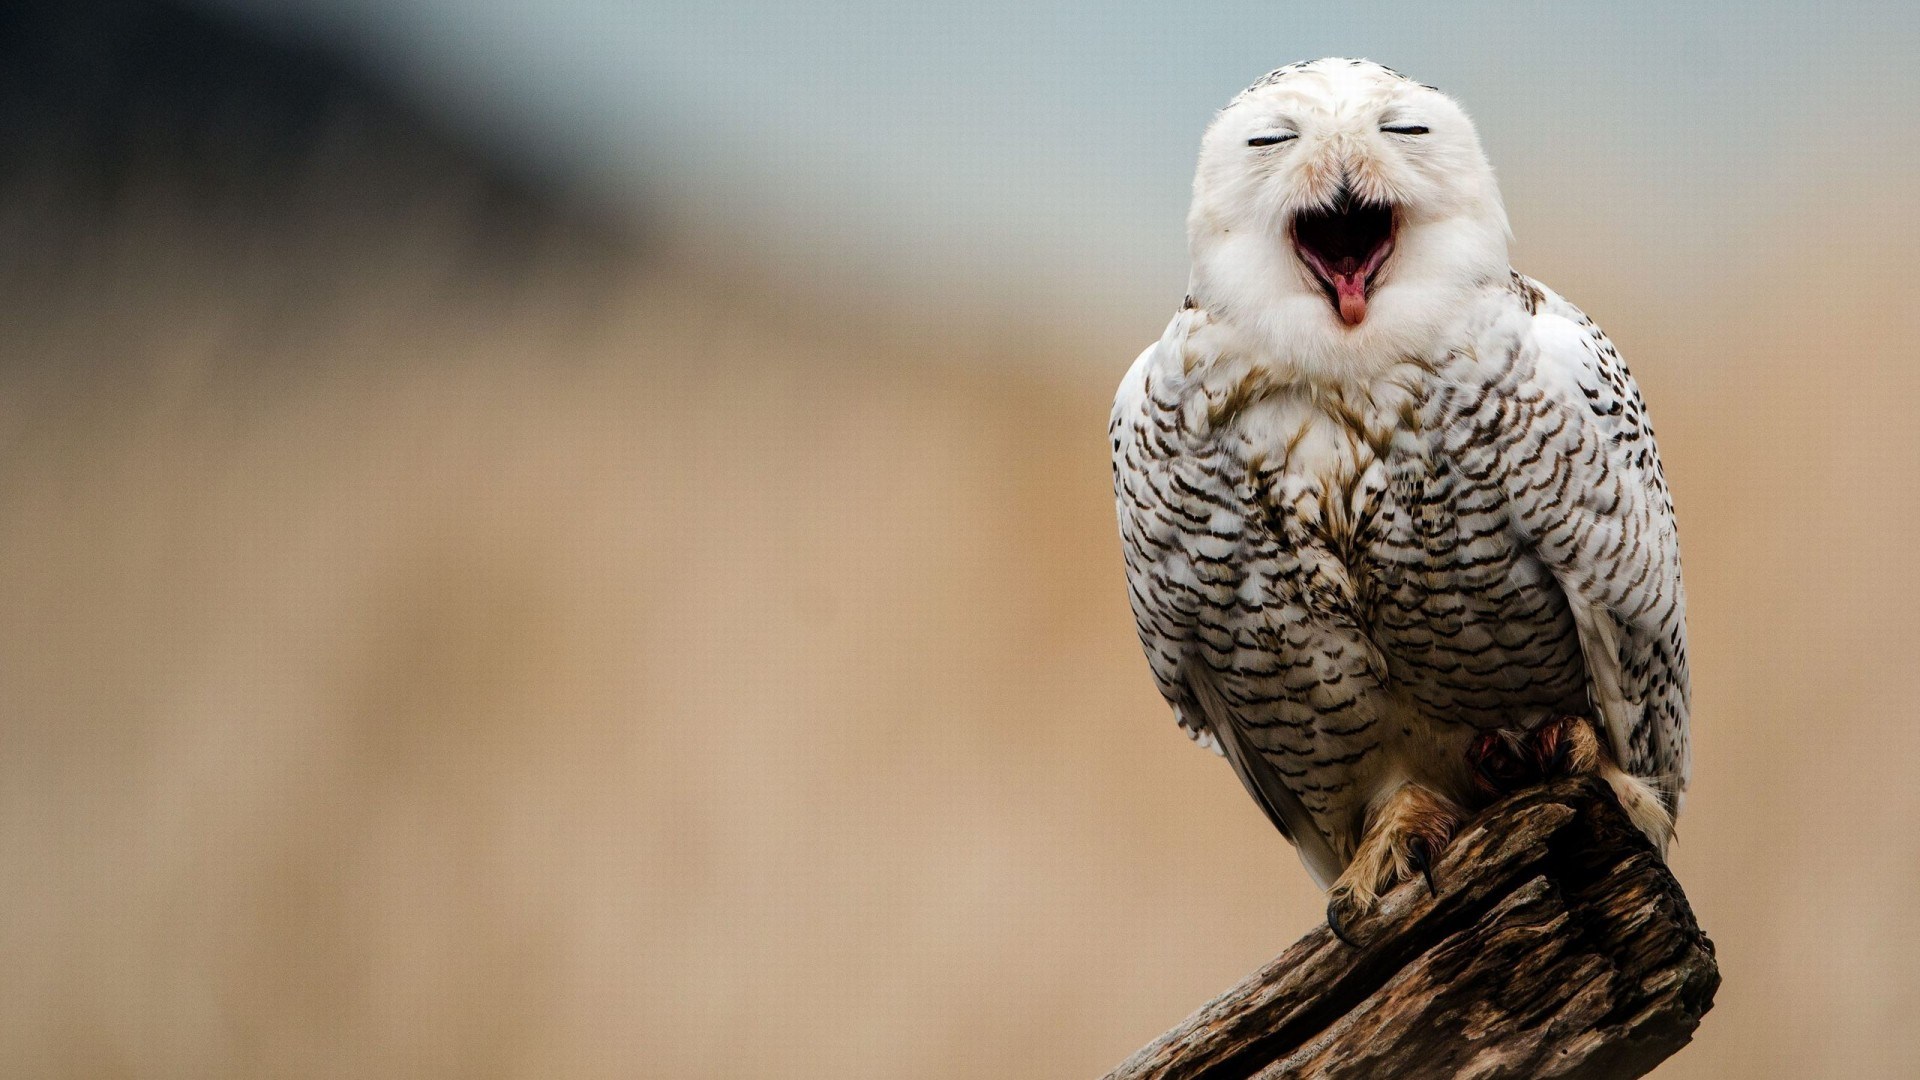 Hd Snowy Owl Wallpaper - White Owl Cute Owl Wallpaper Background , HD Wallpaper & Backgrounds